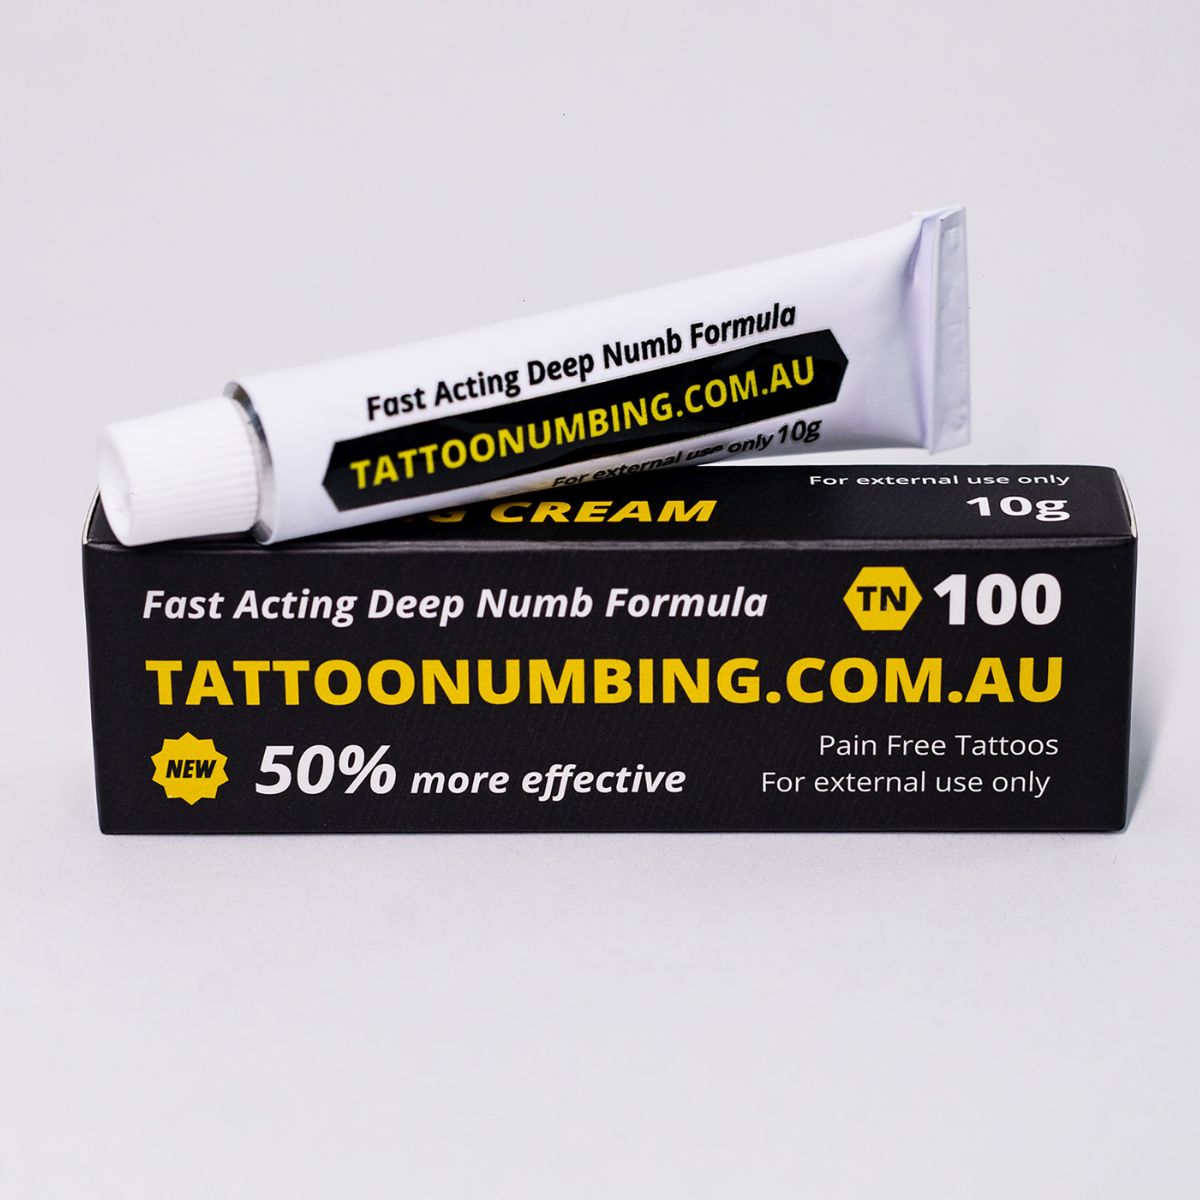 TN100 - Premium Tattoo Numbing Cream - Australia's Strongest Tattoo Numbing Australia